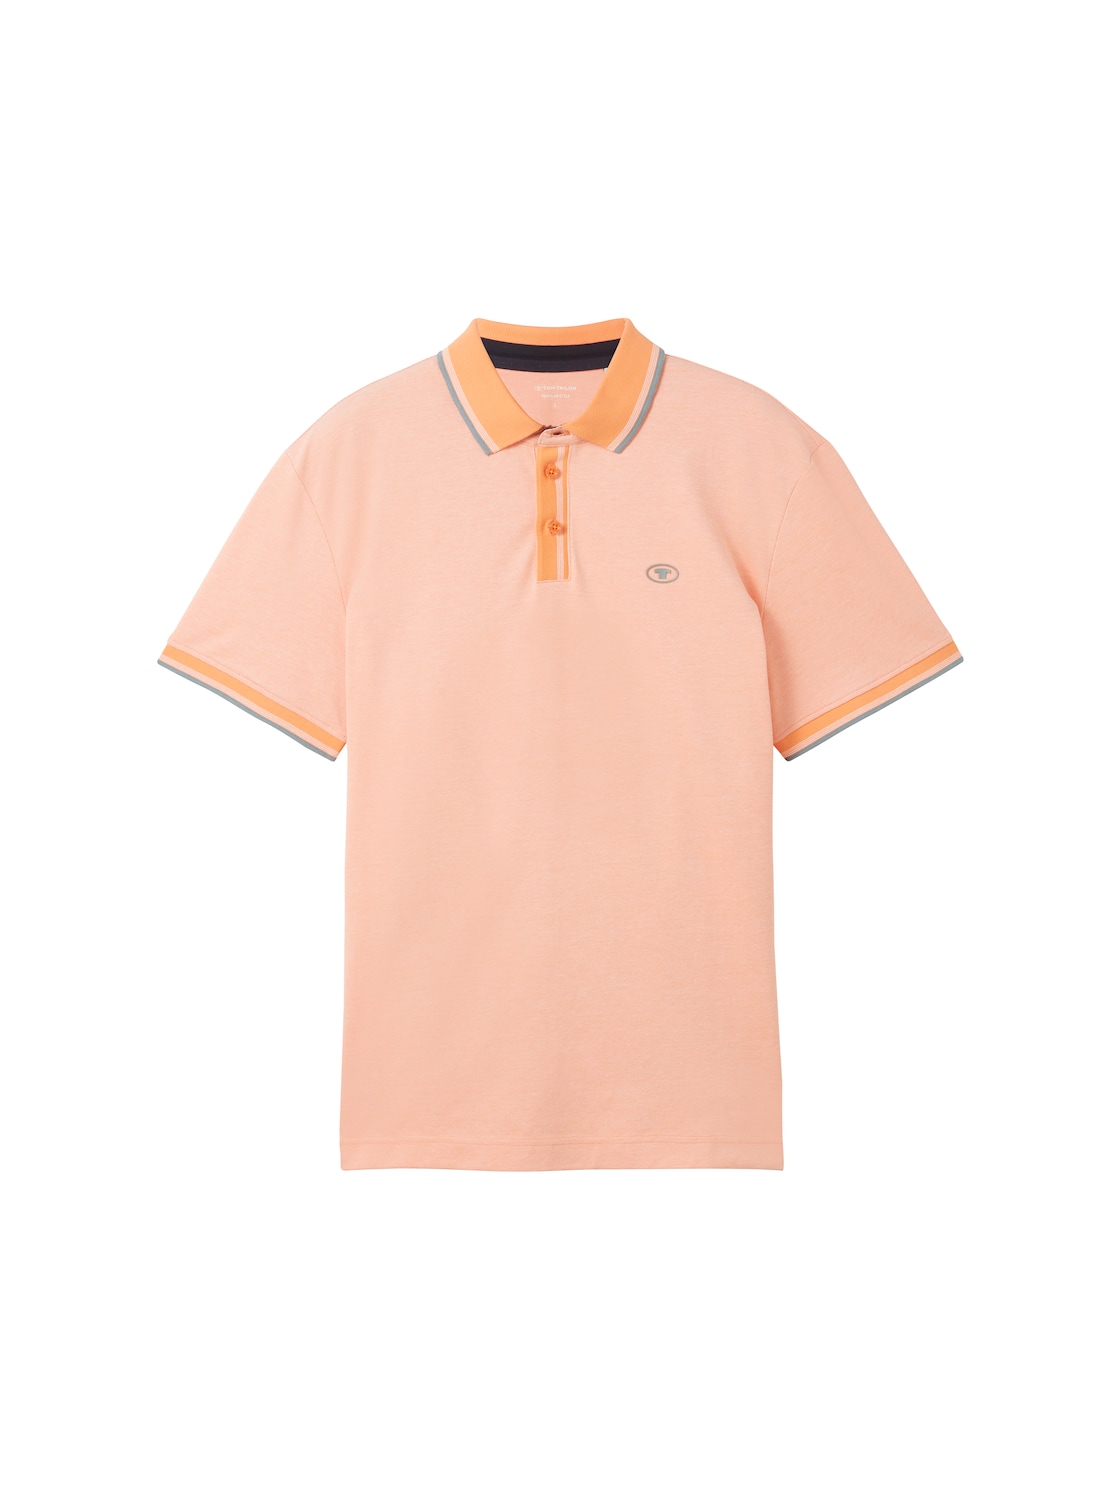 TOM TAILOR Herren Basic Poloshirt, orange, Uni, Gr. M von Tom Tailor